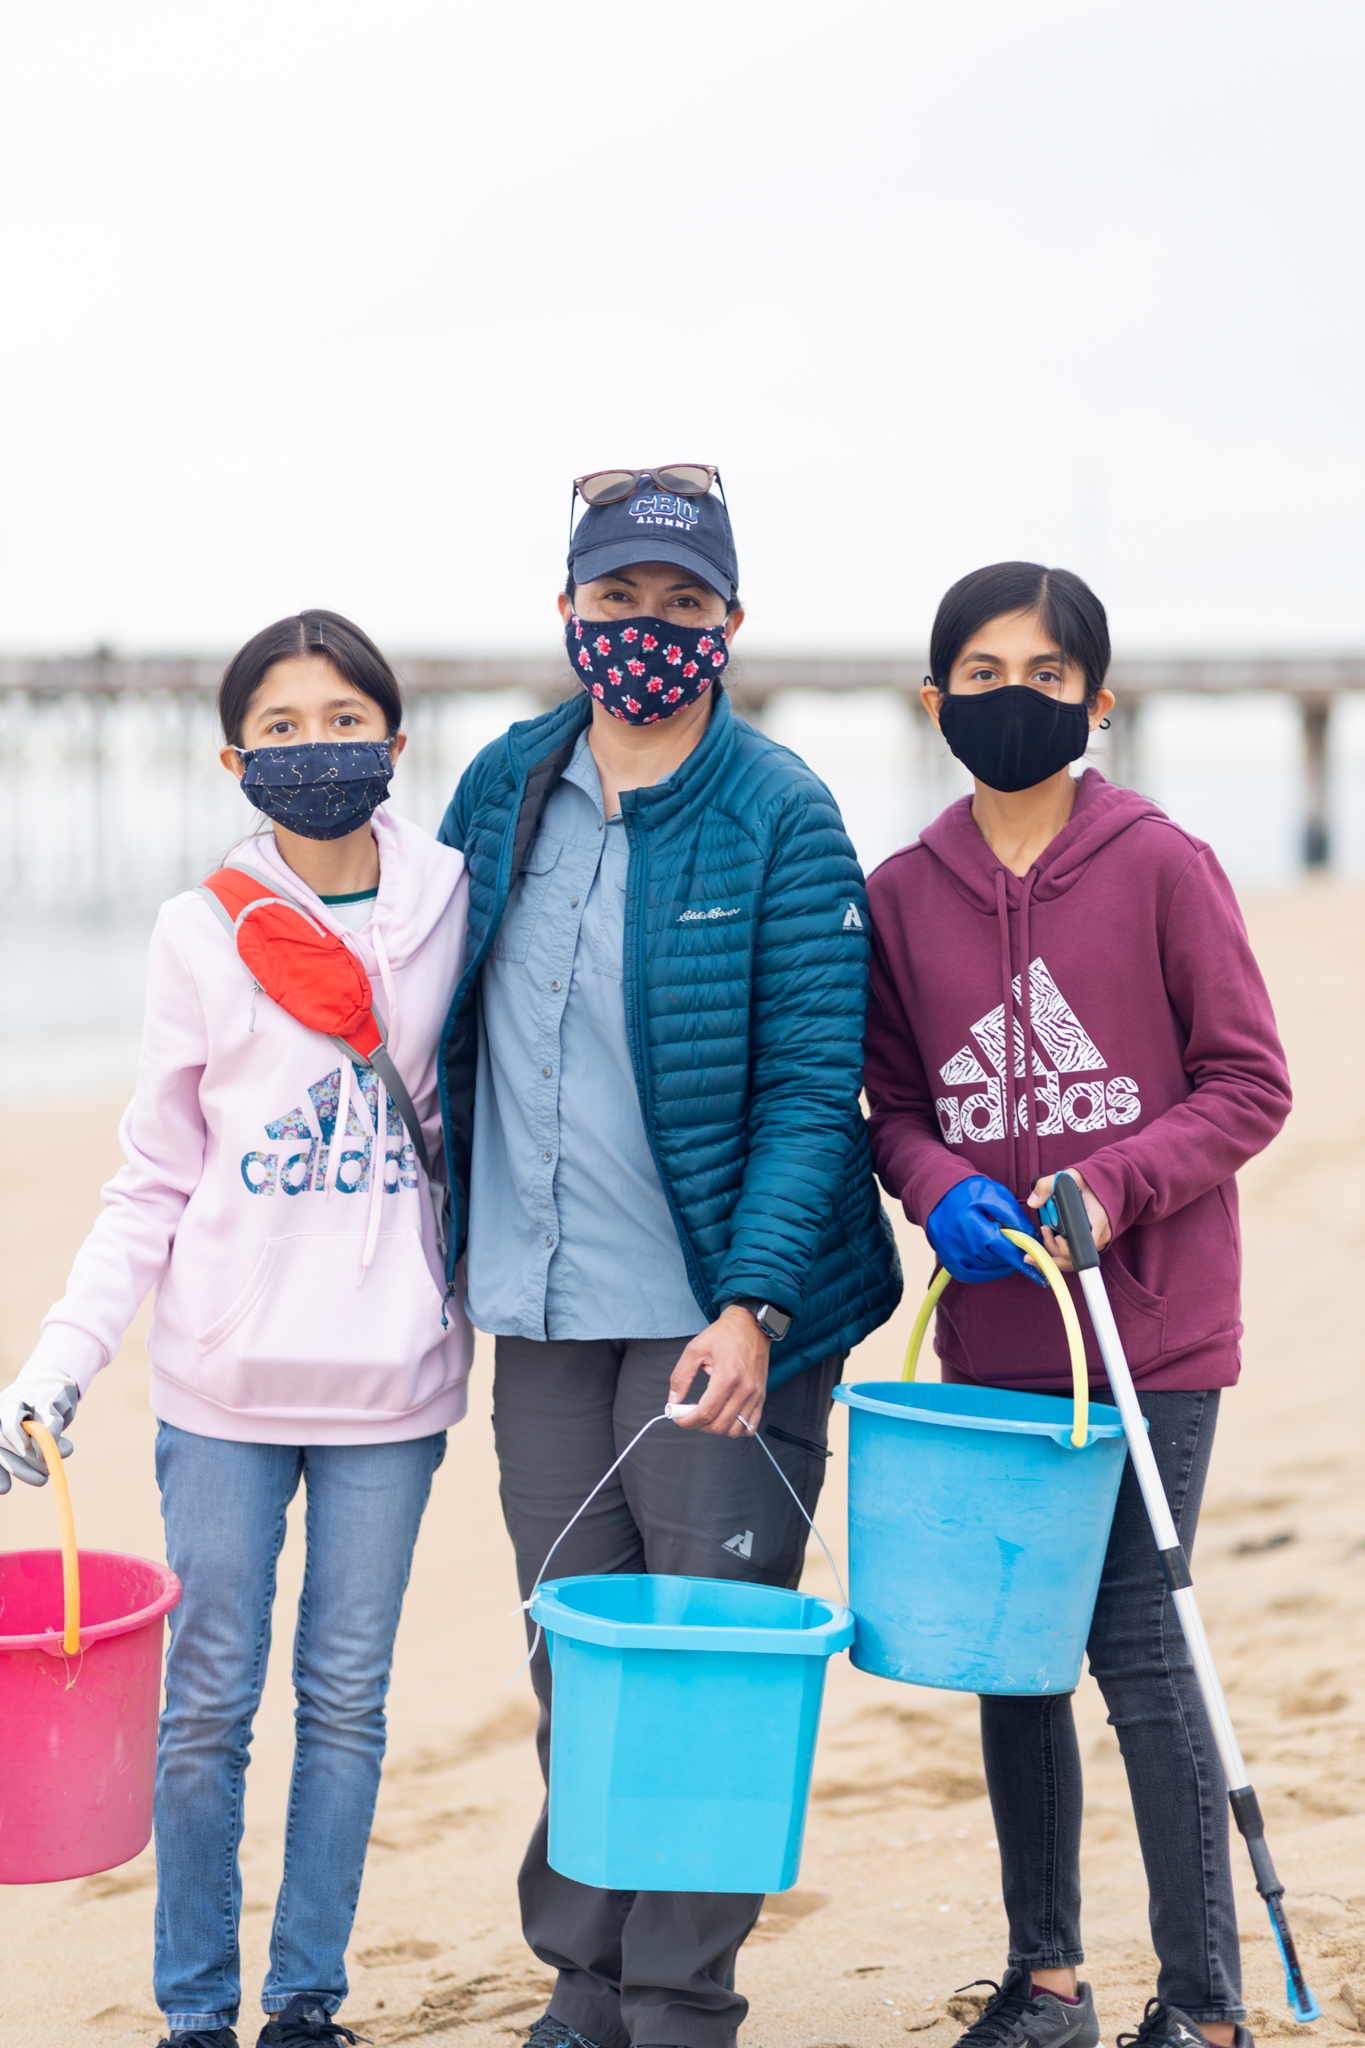 Beach clean-up is a family affair